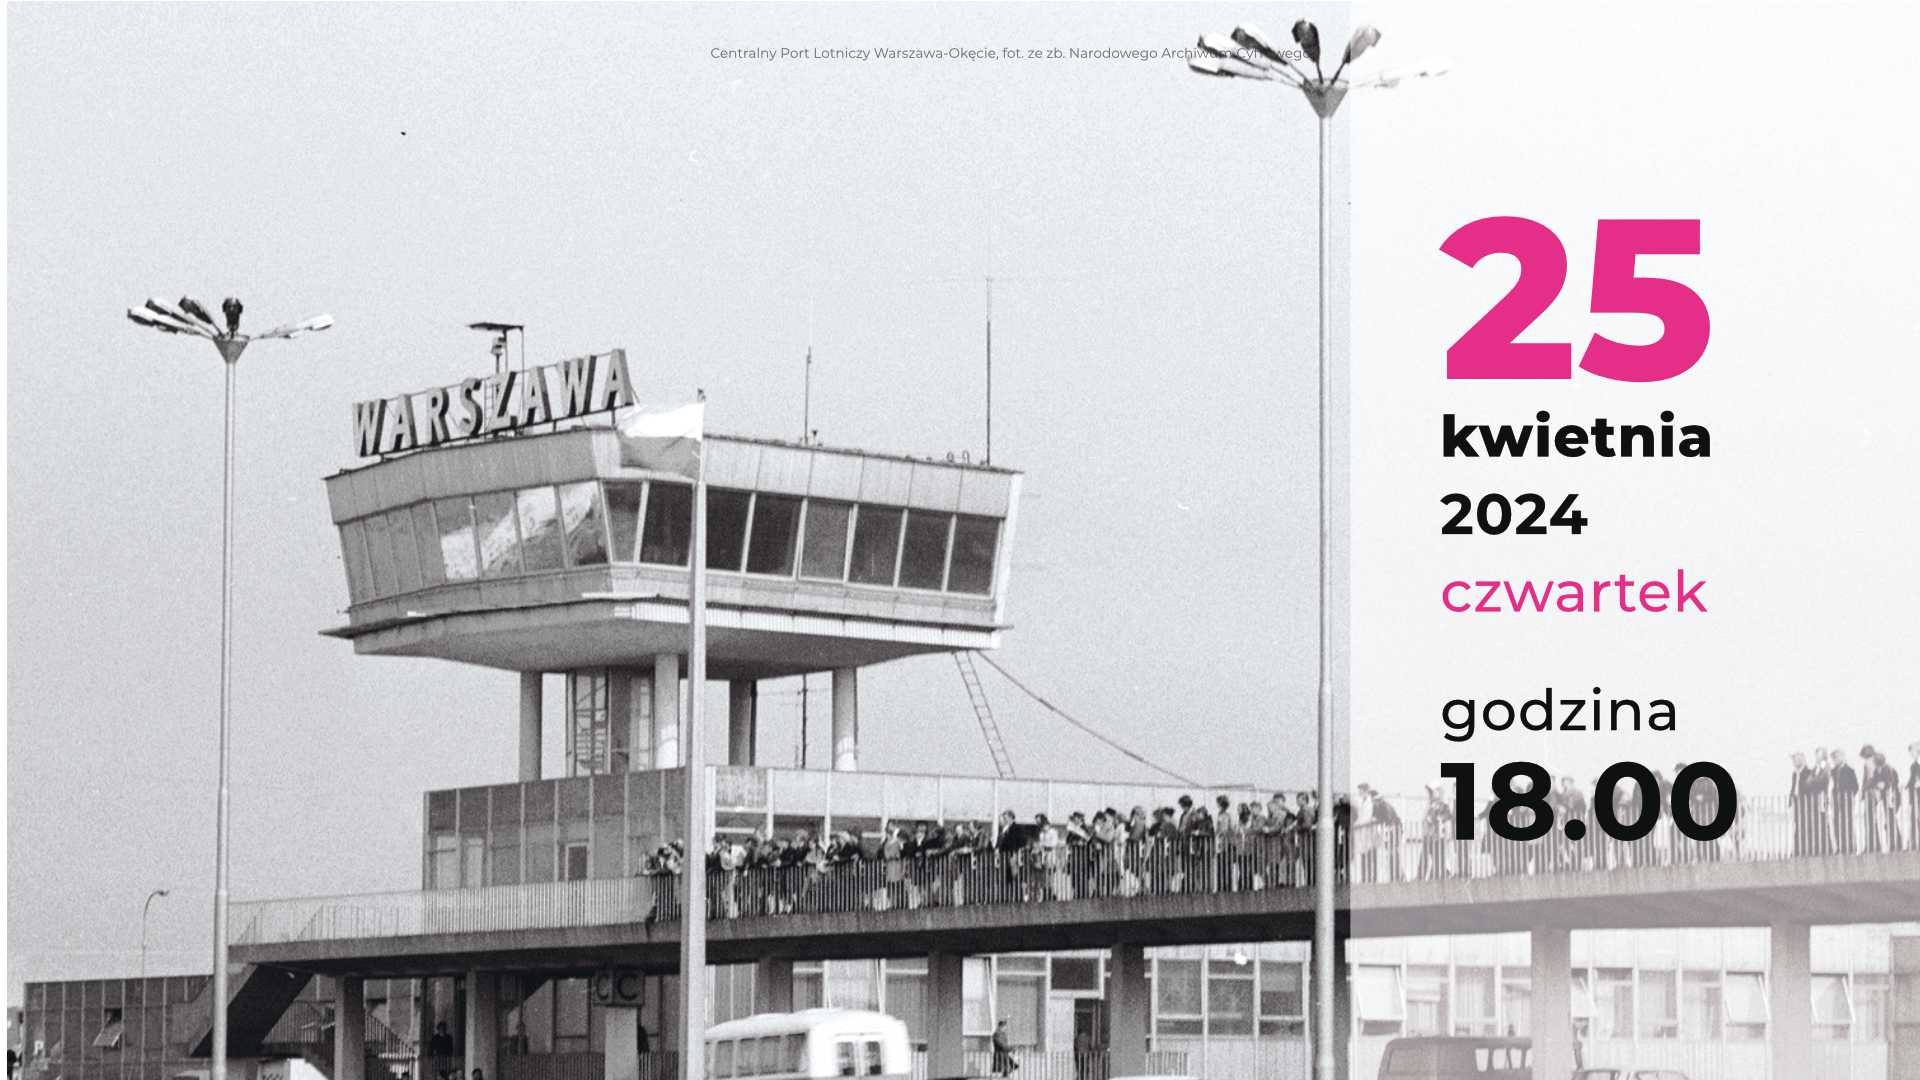 Fragment plakatu ze zdjęciem Centralnego Portu Lotniczego Warszawa-Okęcie, fot. ze zb. Narodowego Archiwum Cyfrowego